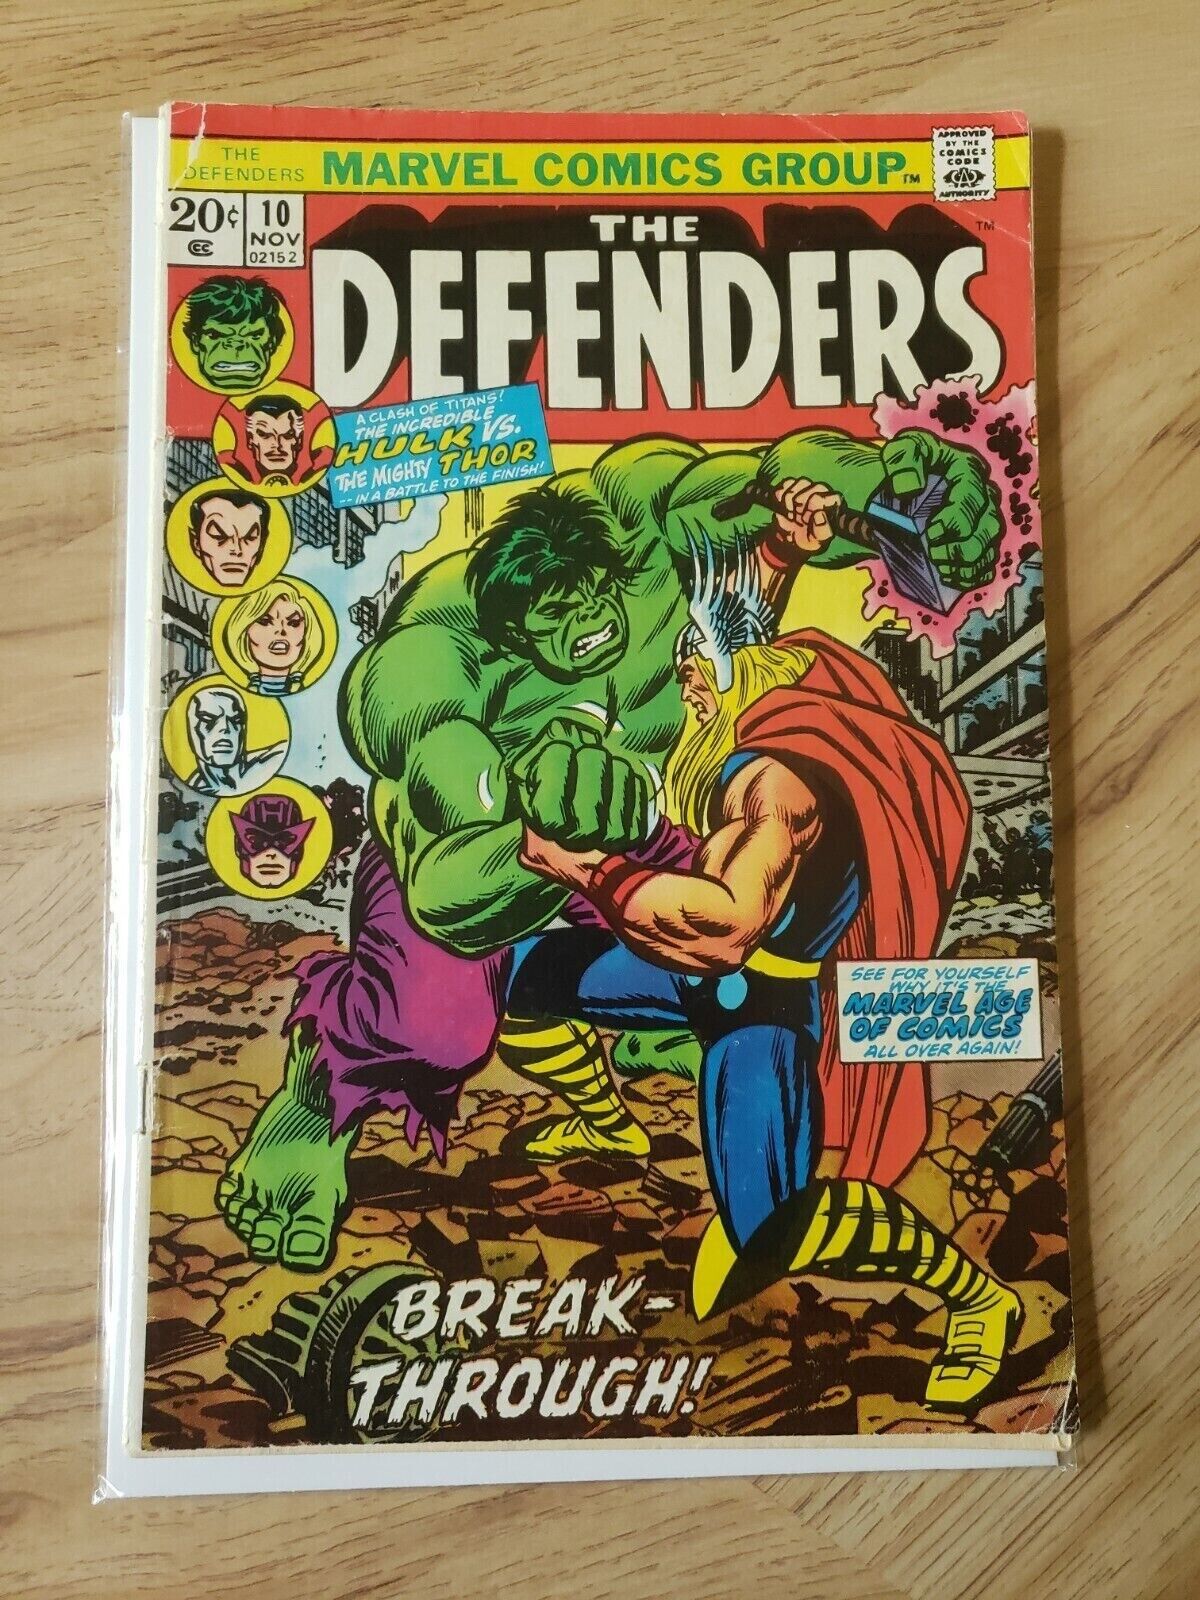 Defenders #10, GD+ 2.5, Hulk v. Thor, Avengers, Iron Man, Dr. Strange, Loki